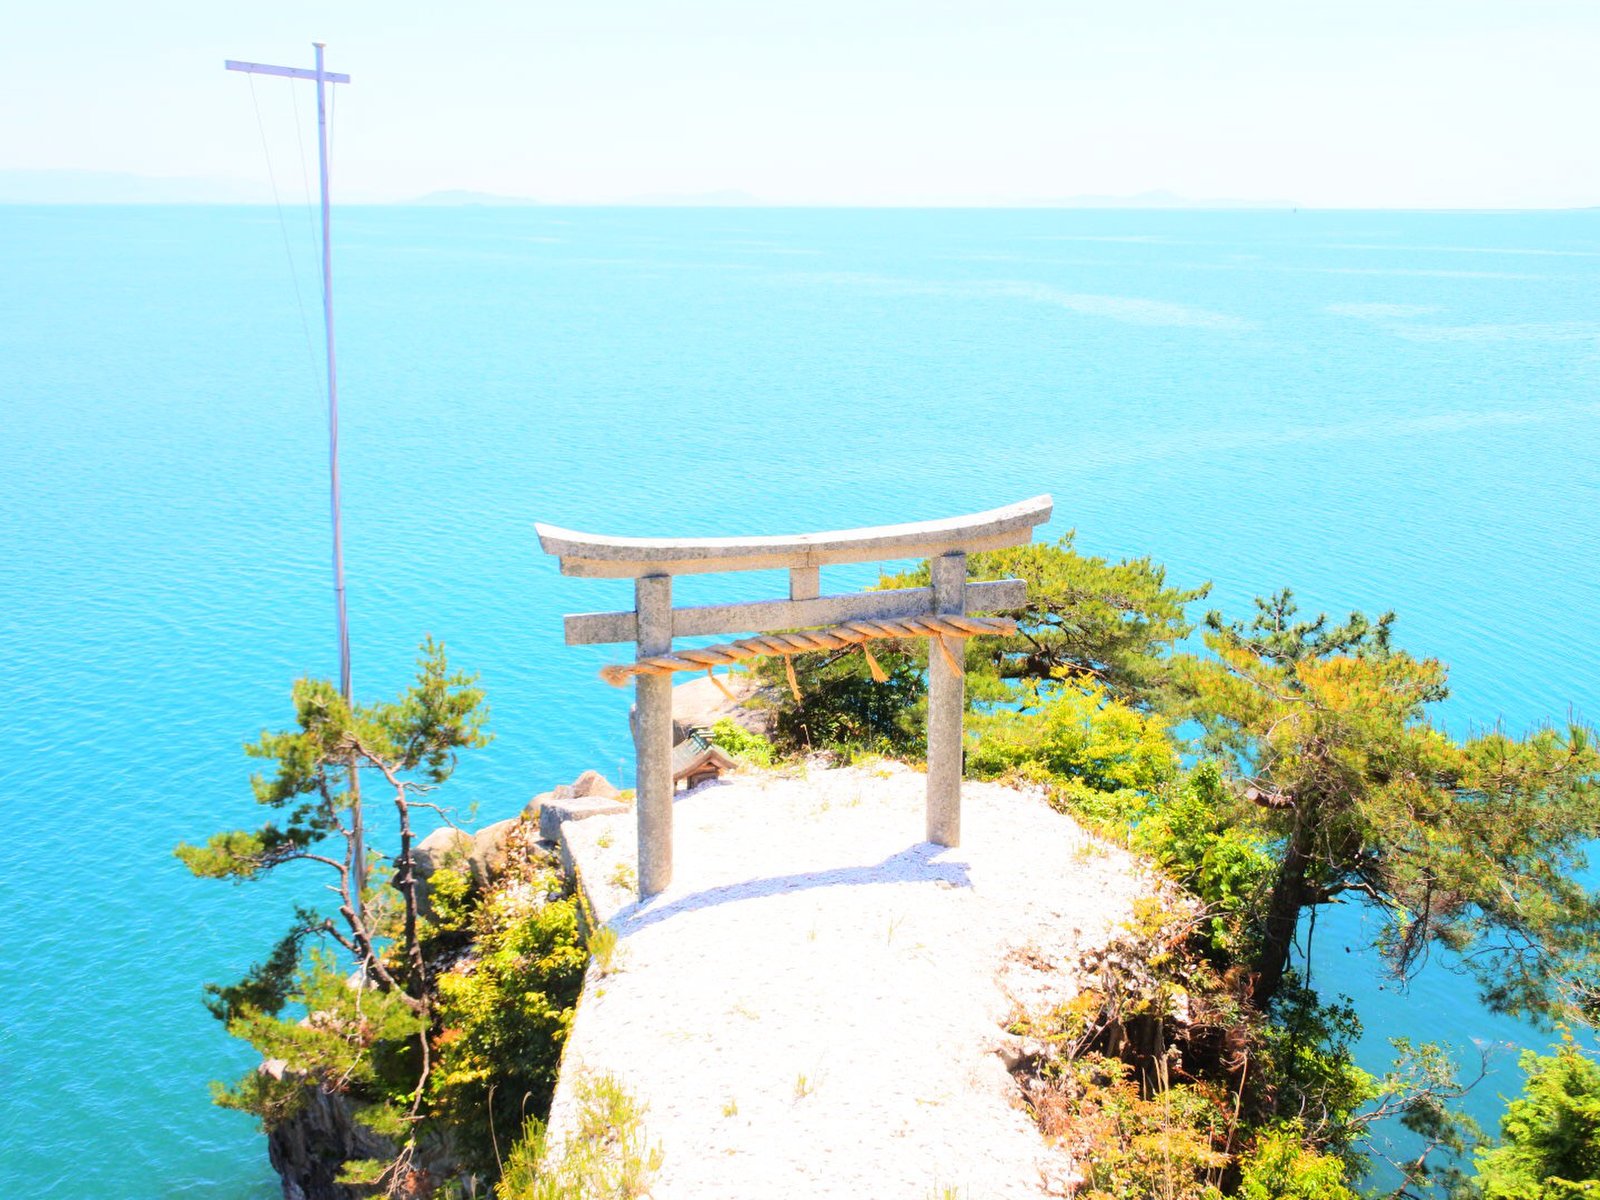 大阪から3時間で行けるパワースポット 竹生島観光 いま人気の無人島を散策しよう Playlife プレイライフ